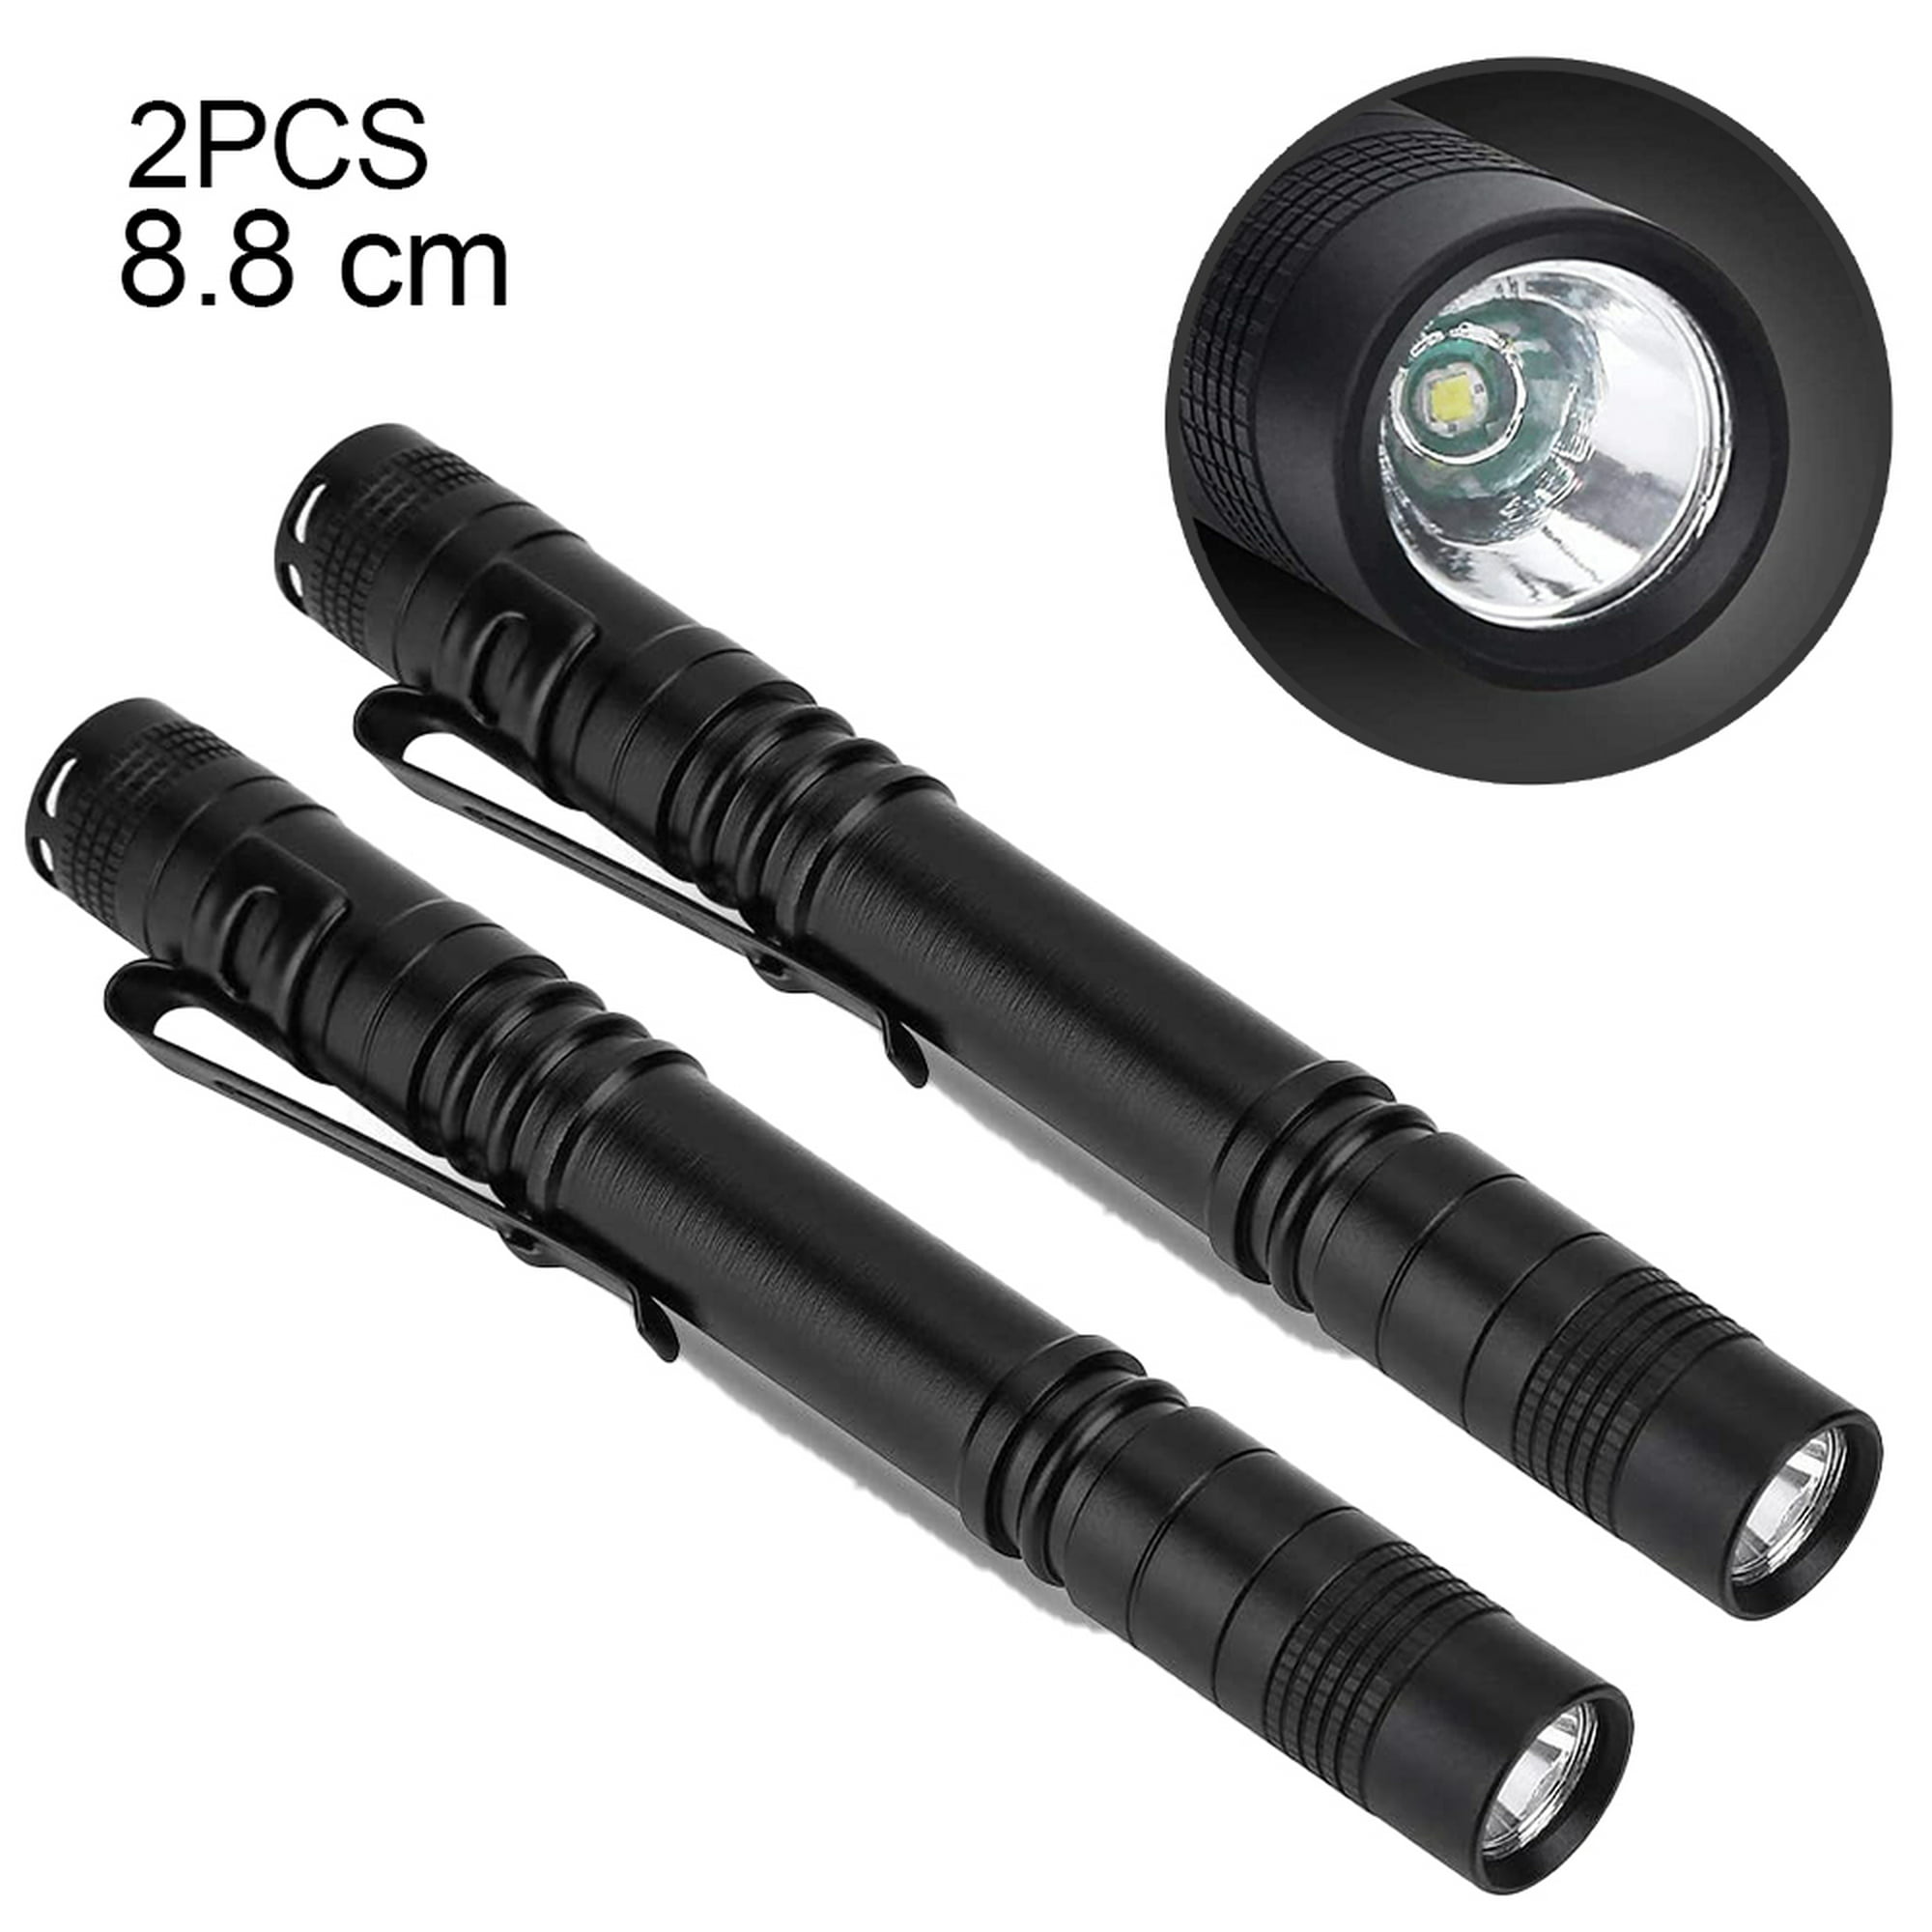  Linternas pequeñas mini LED de alto lumen táctico con clip,  linterna compacta de bolsillo de mano para acampar al aire libre,  inspección de emergencia reparación, funciona con pilas, resistente al agua  (